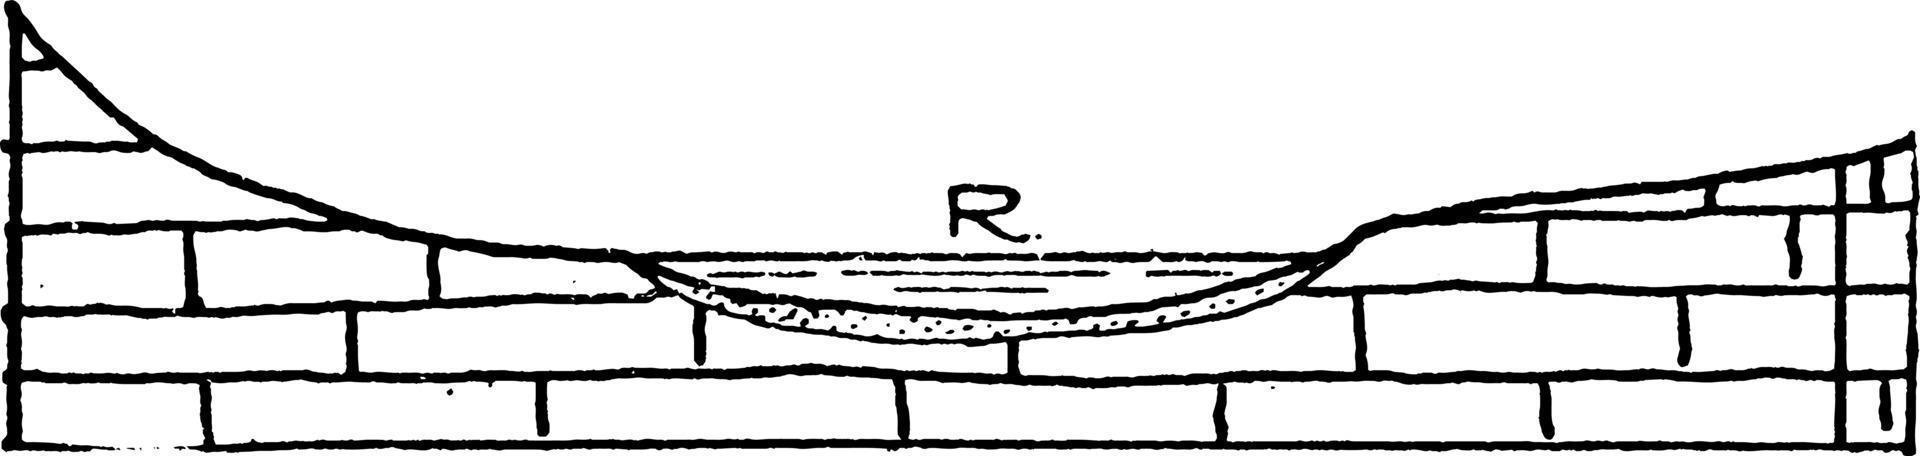 rivier- kanaal, wijnoogst illustratie vector